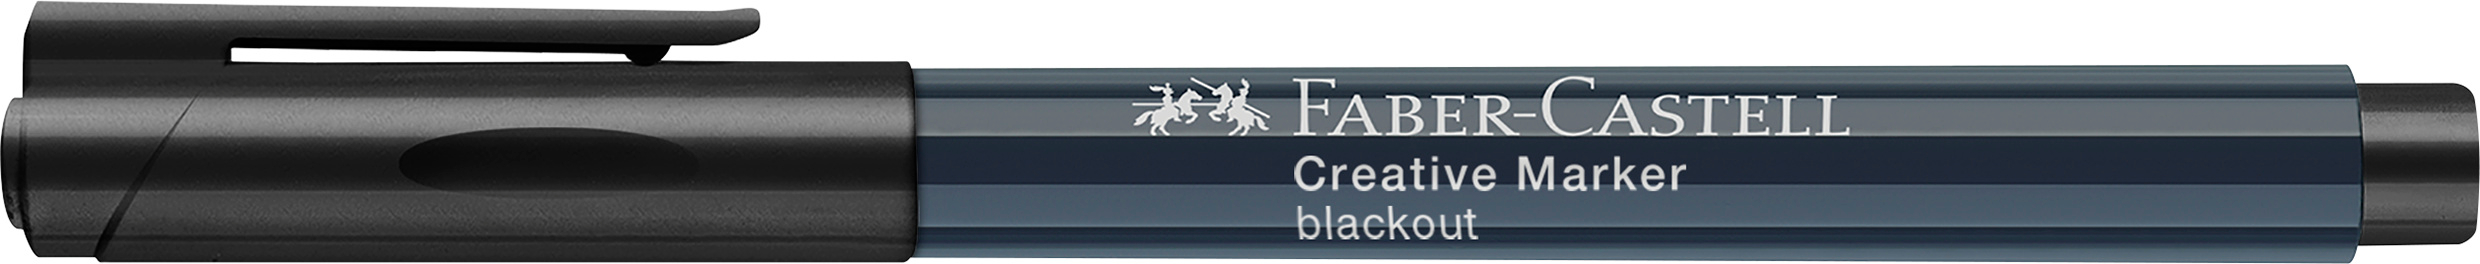 FABER-CASTELL Creative Marker 1.5 mm 160799 noir